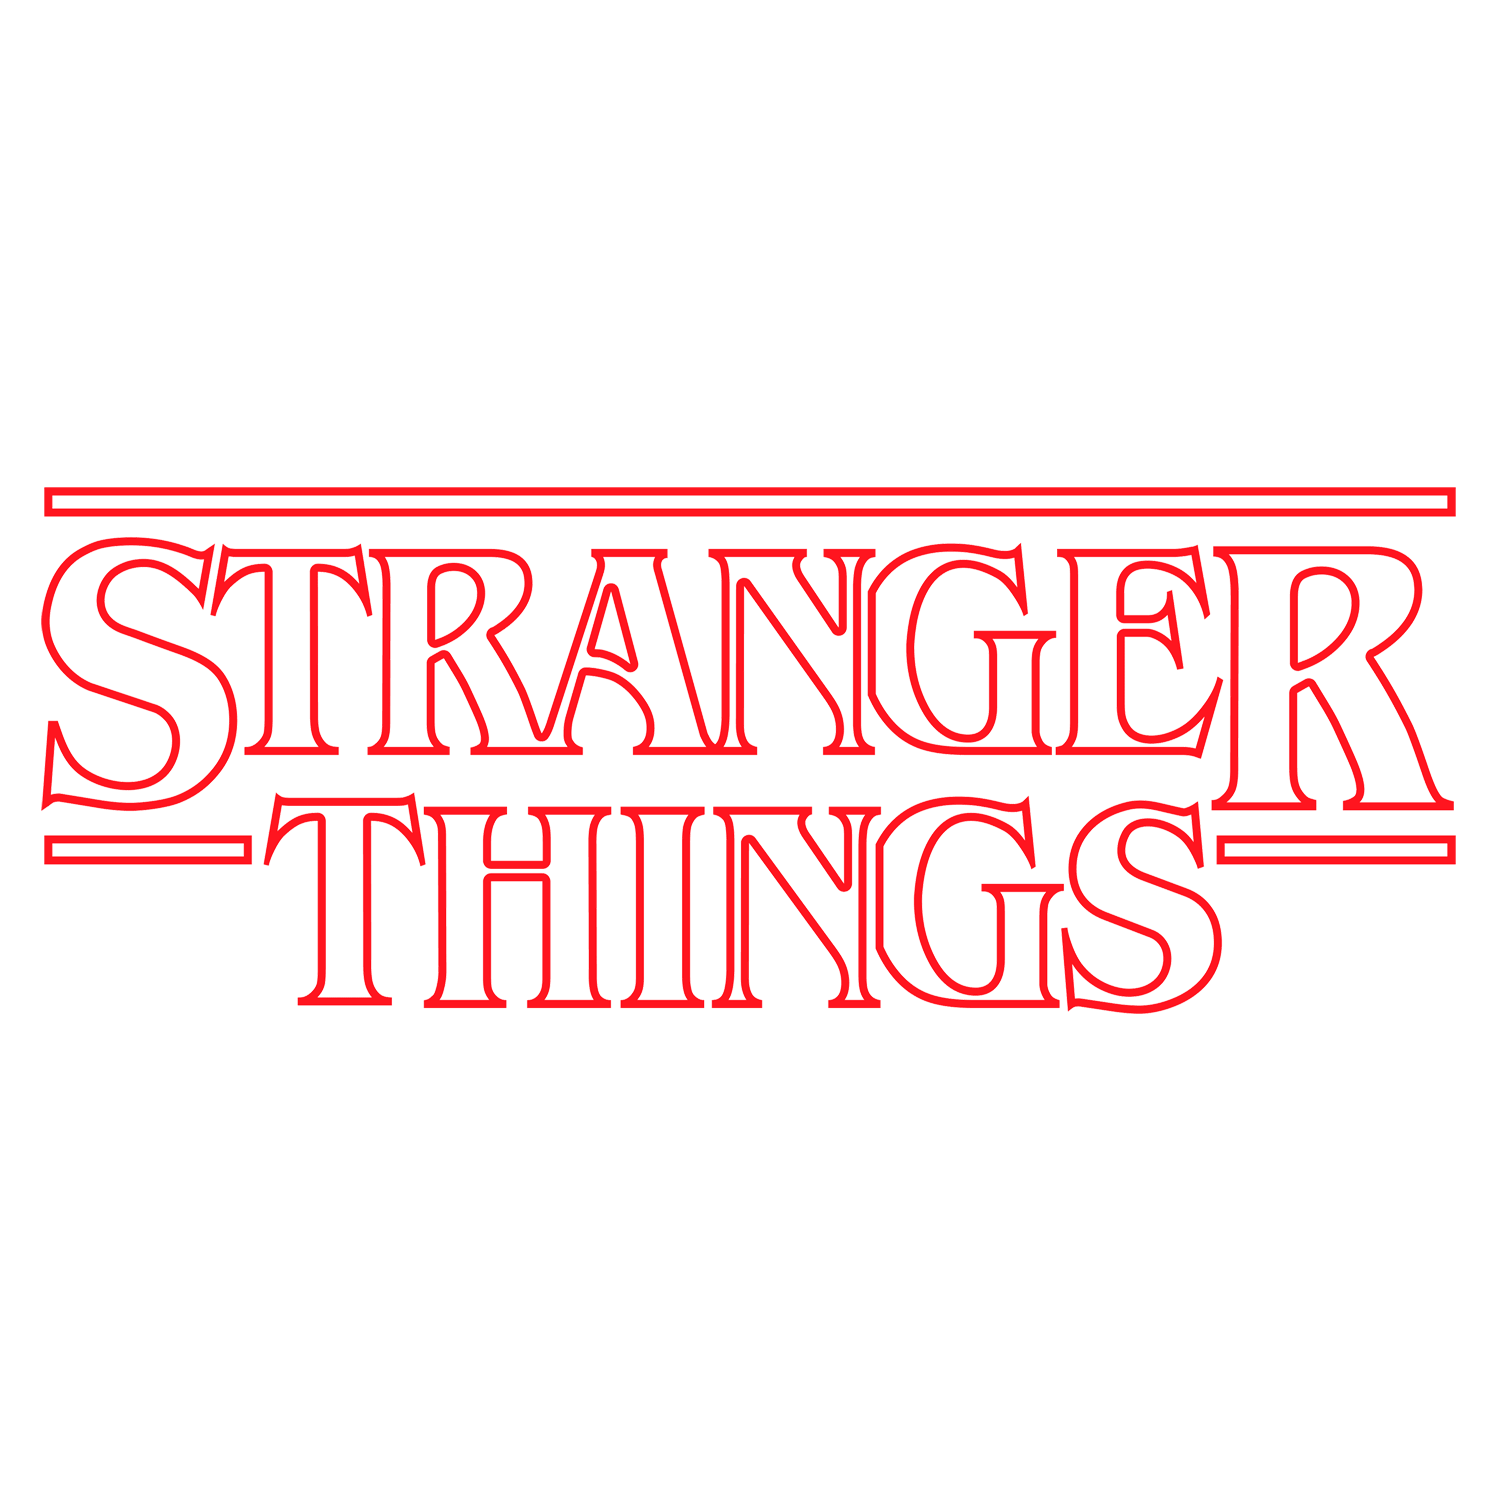 Stranger Things logo outlined / season 1